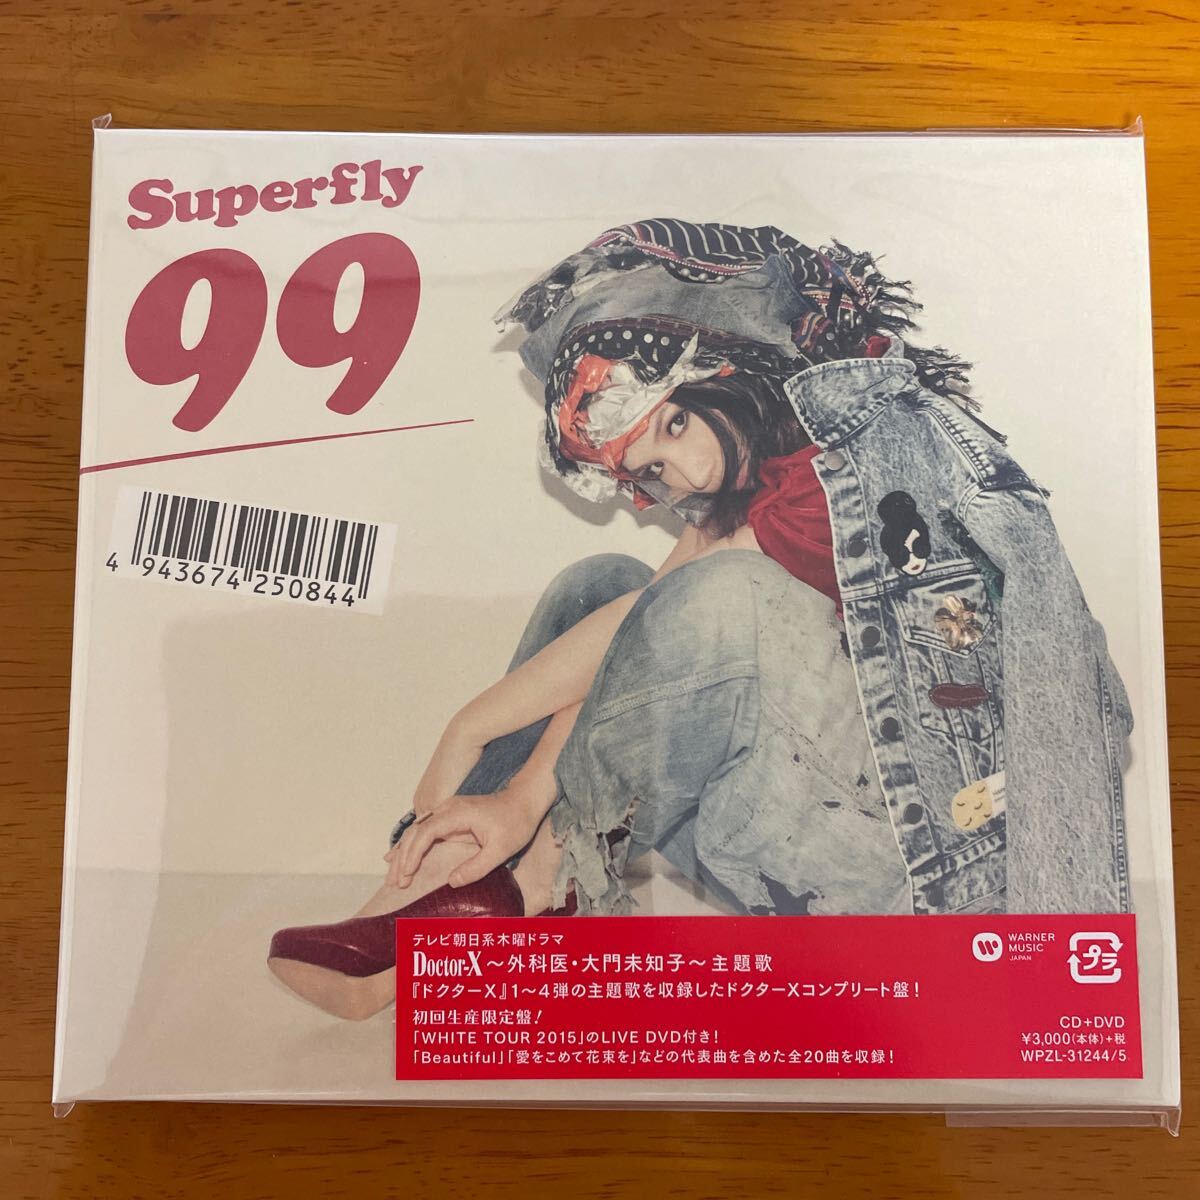 新品 Superfly 99 初回生産限定盤 CD+DVD